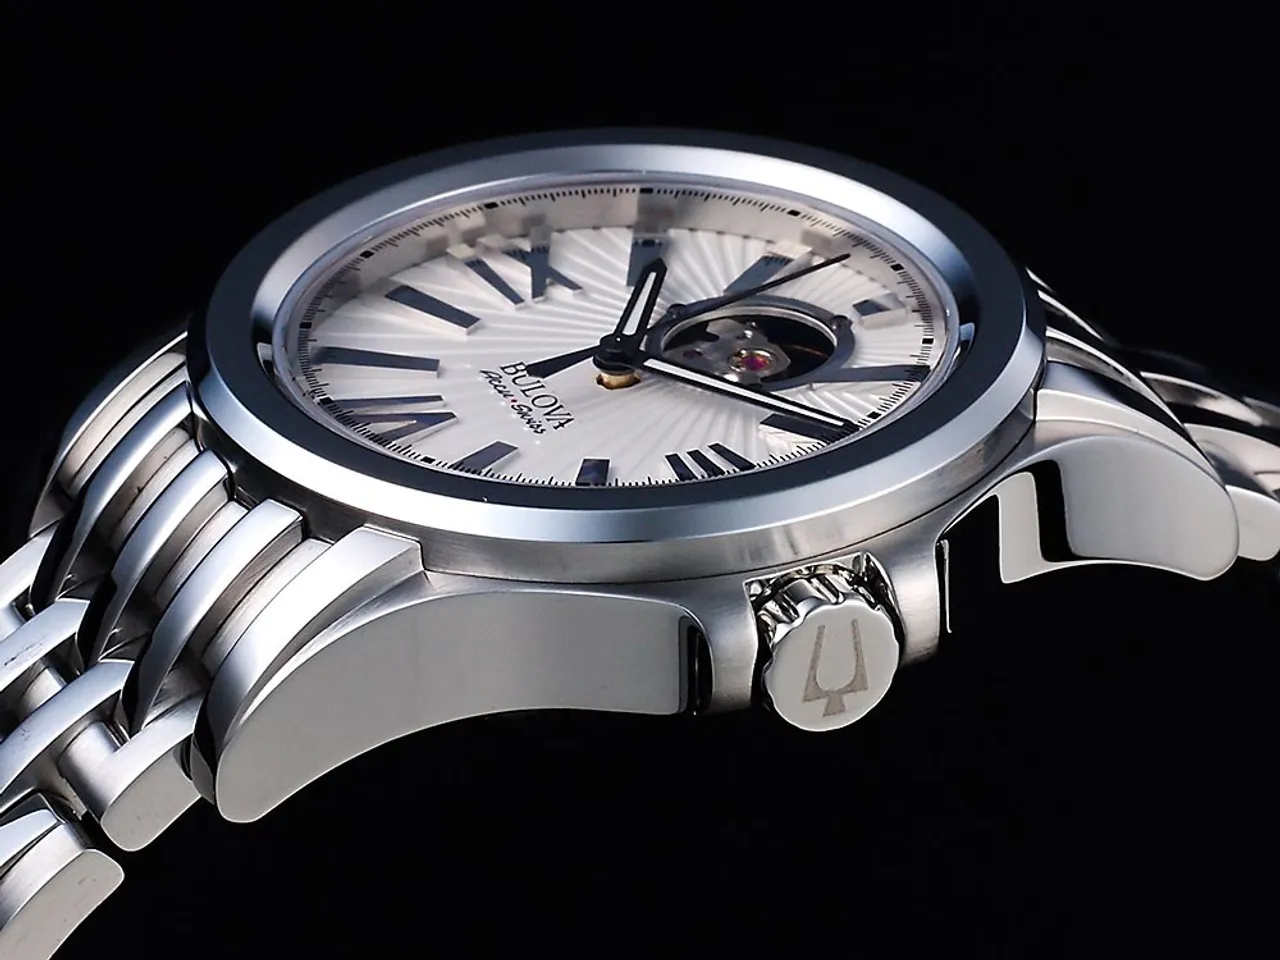 Chiếc đồng hồ Bulova Accu Swiss thu hút ở mọi góc nhìn